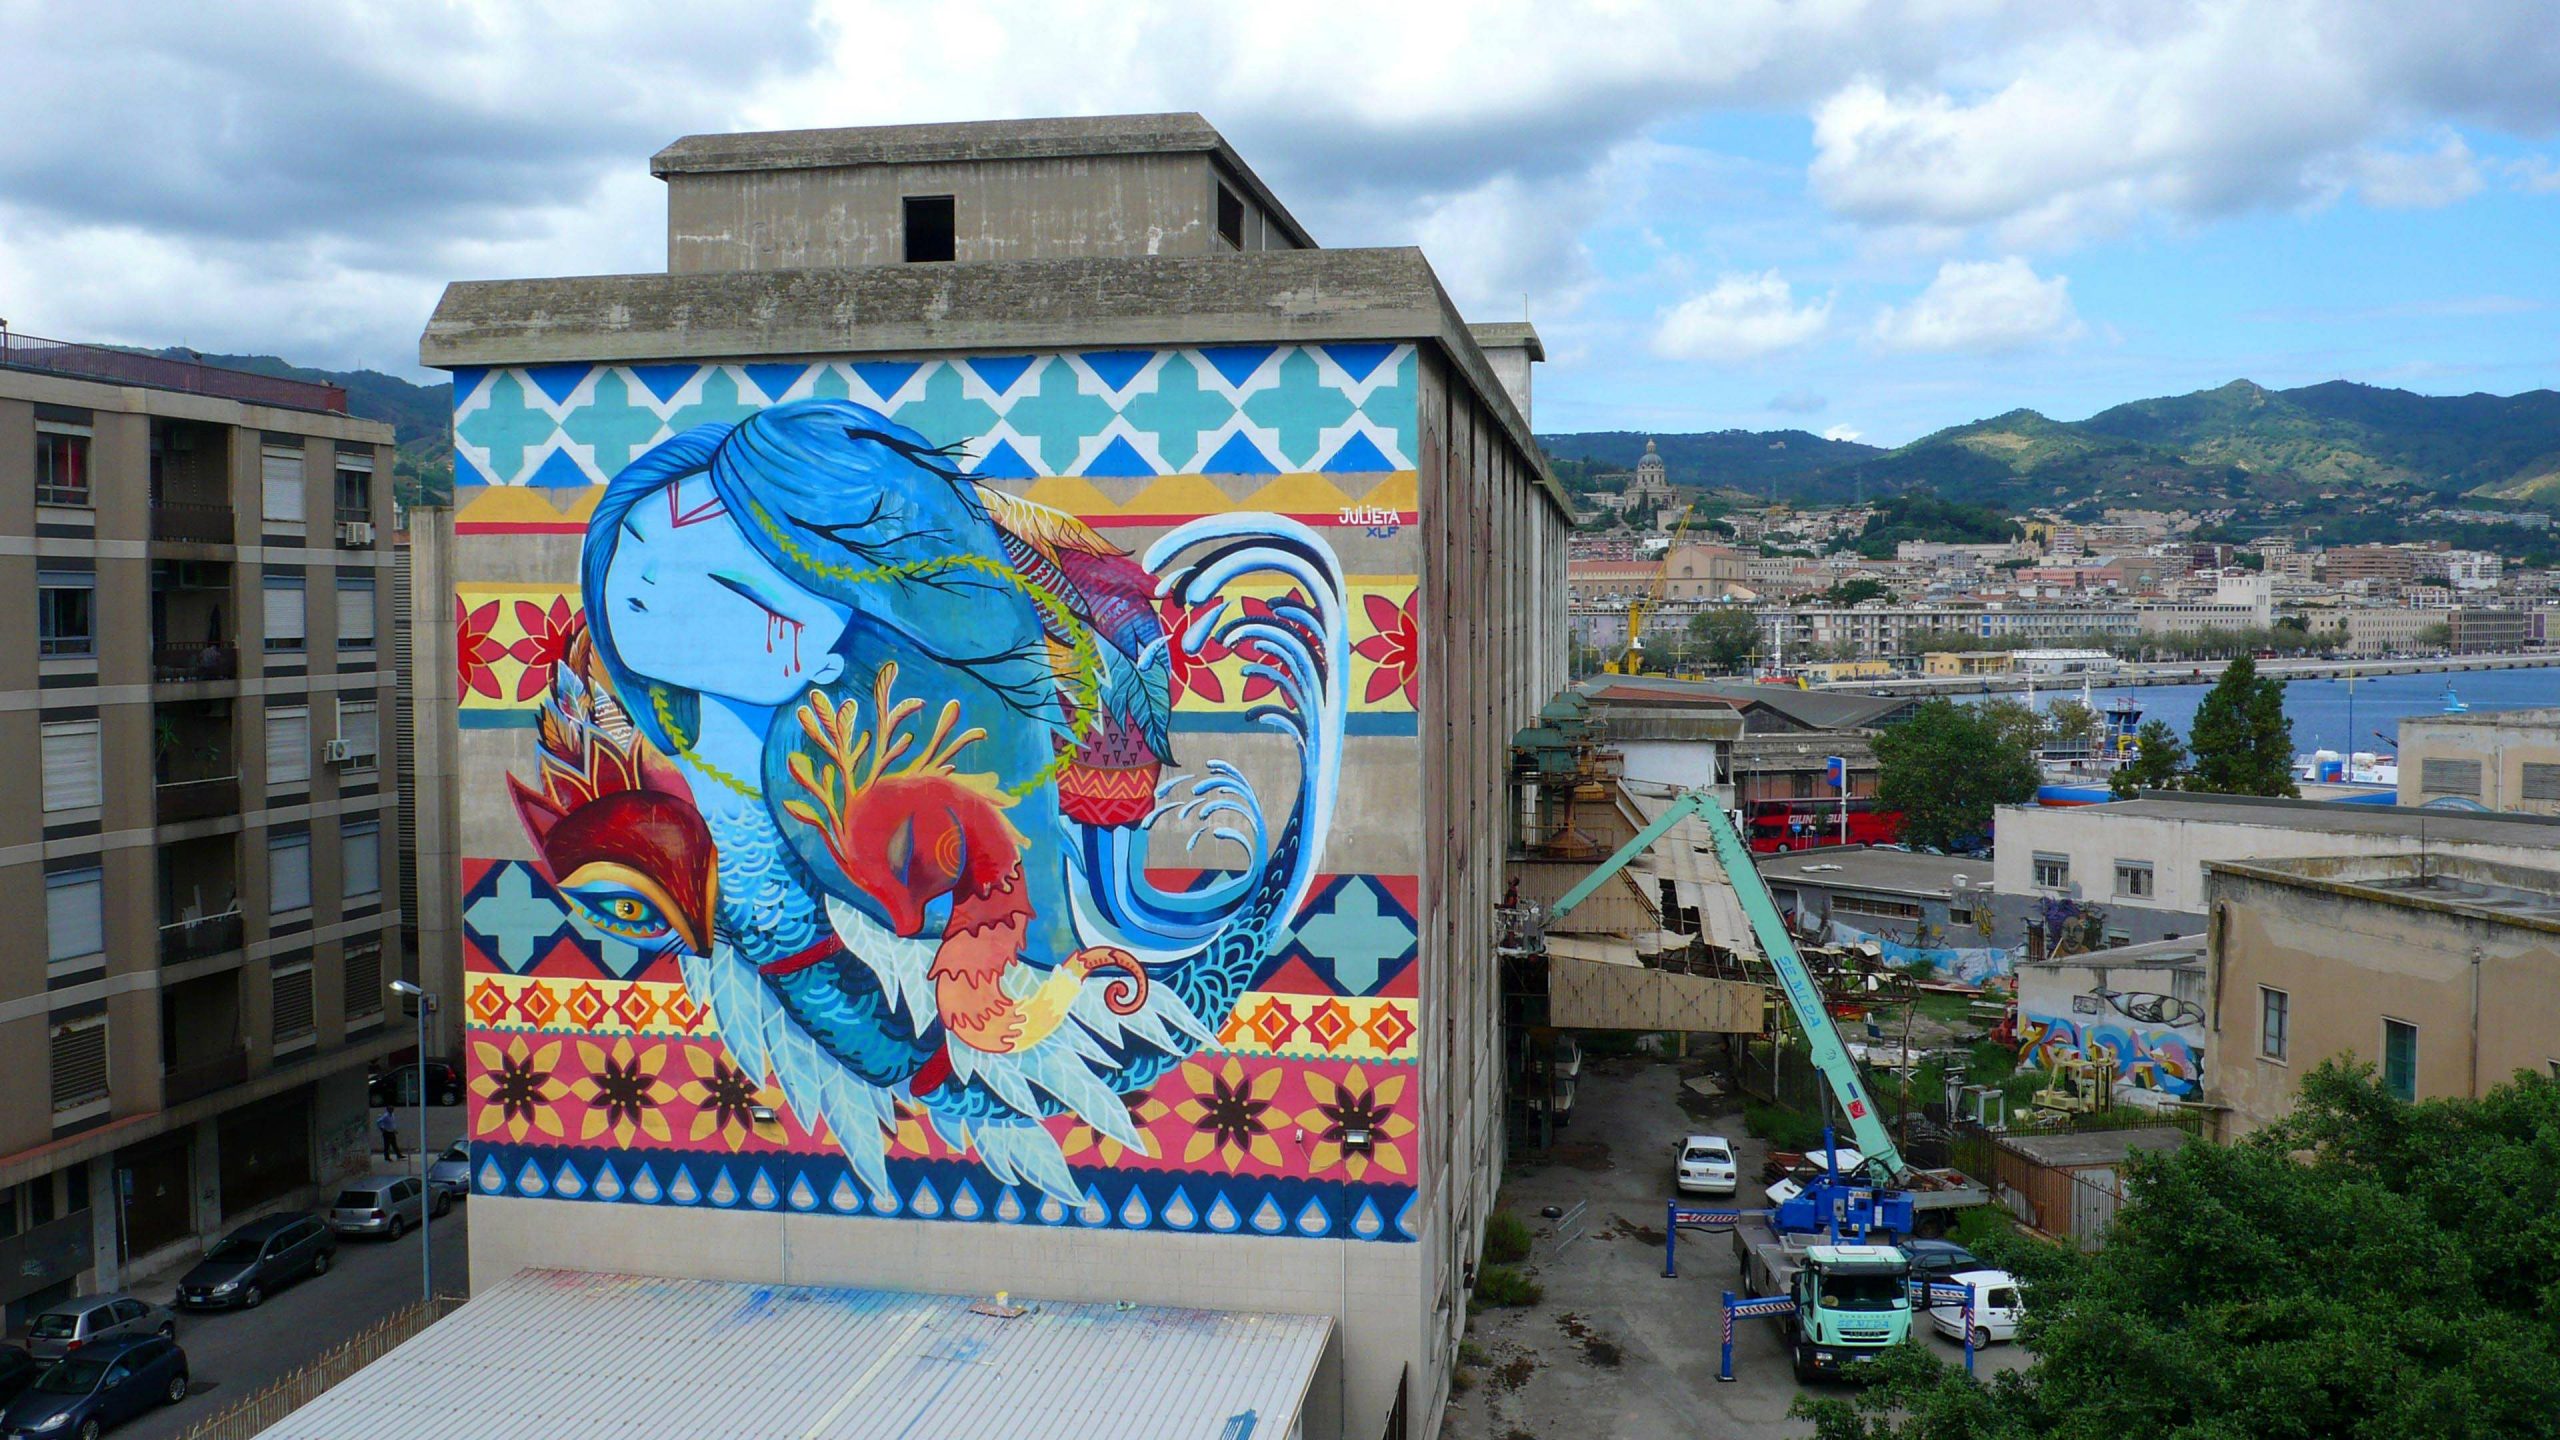 Španska ulična umetnica Julieta XLF slika mural u Beogradu 1